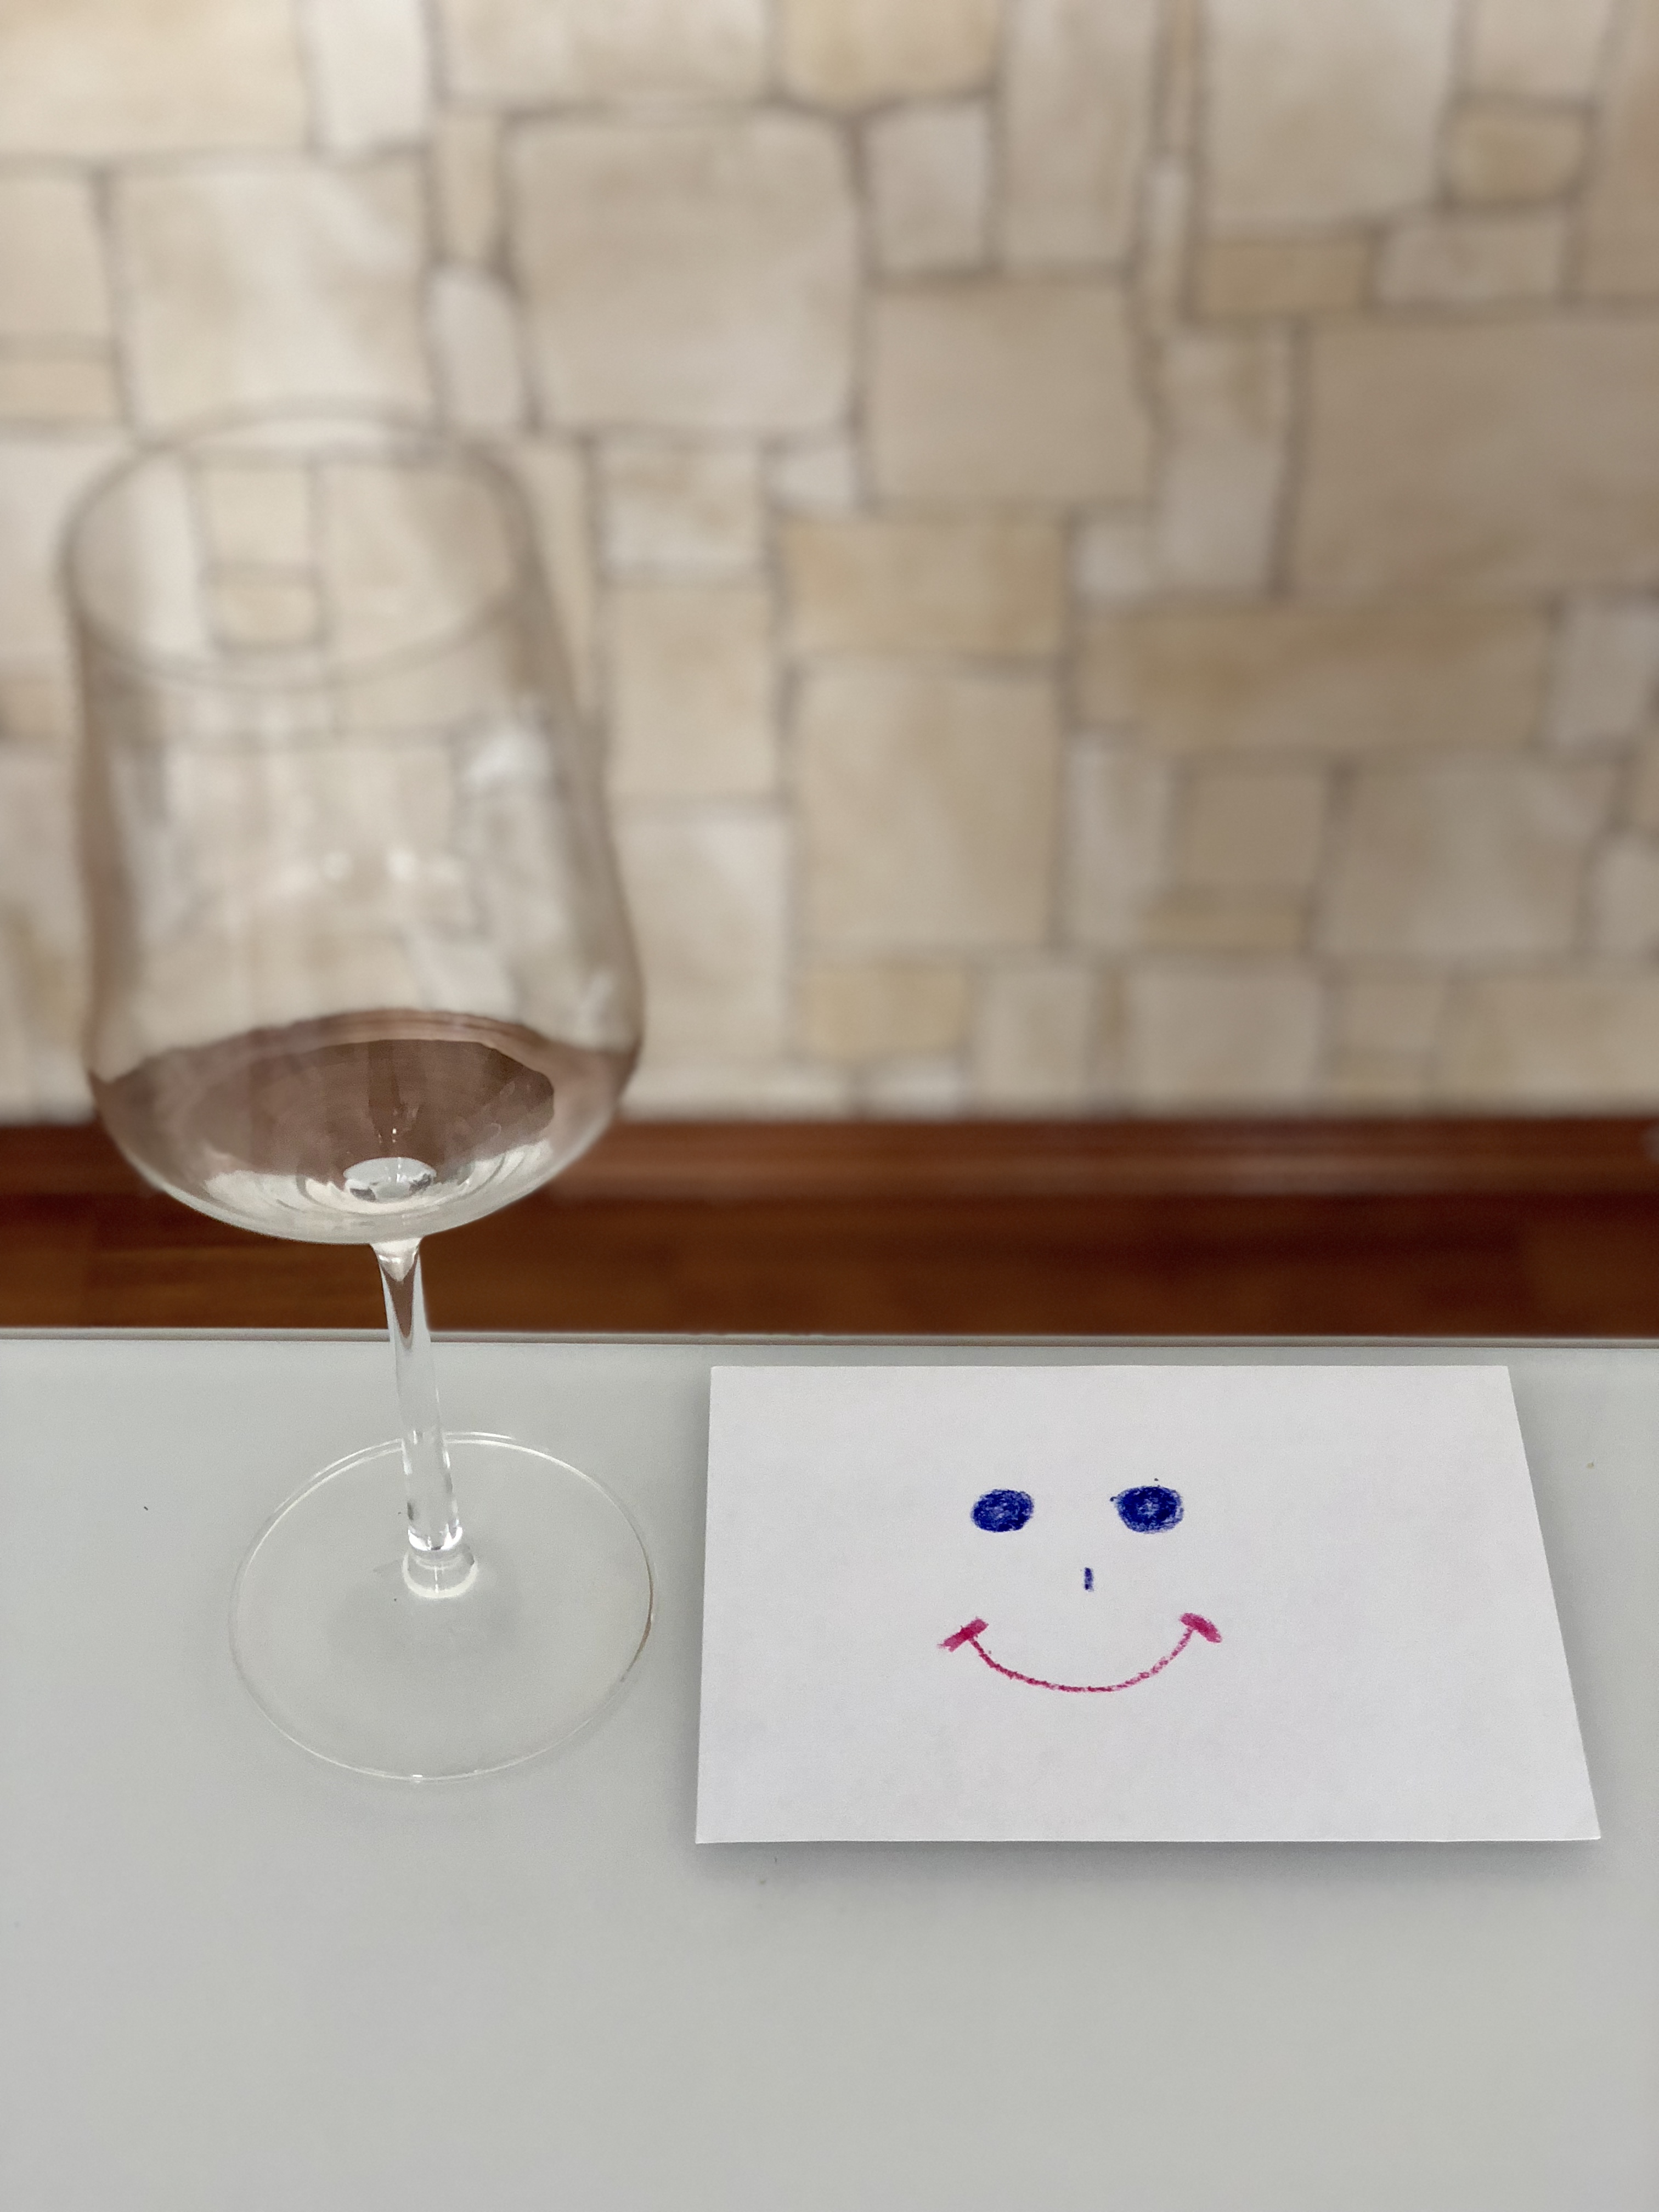 Ein leeres Weinglas am Tisch neben einem Smiley am Papier